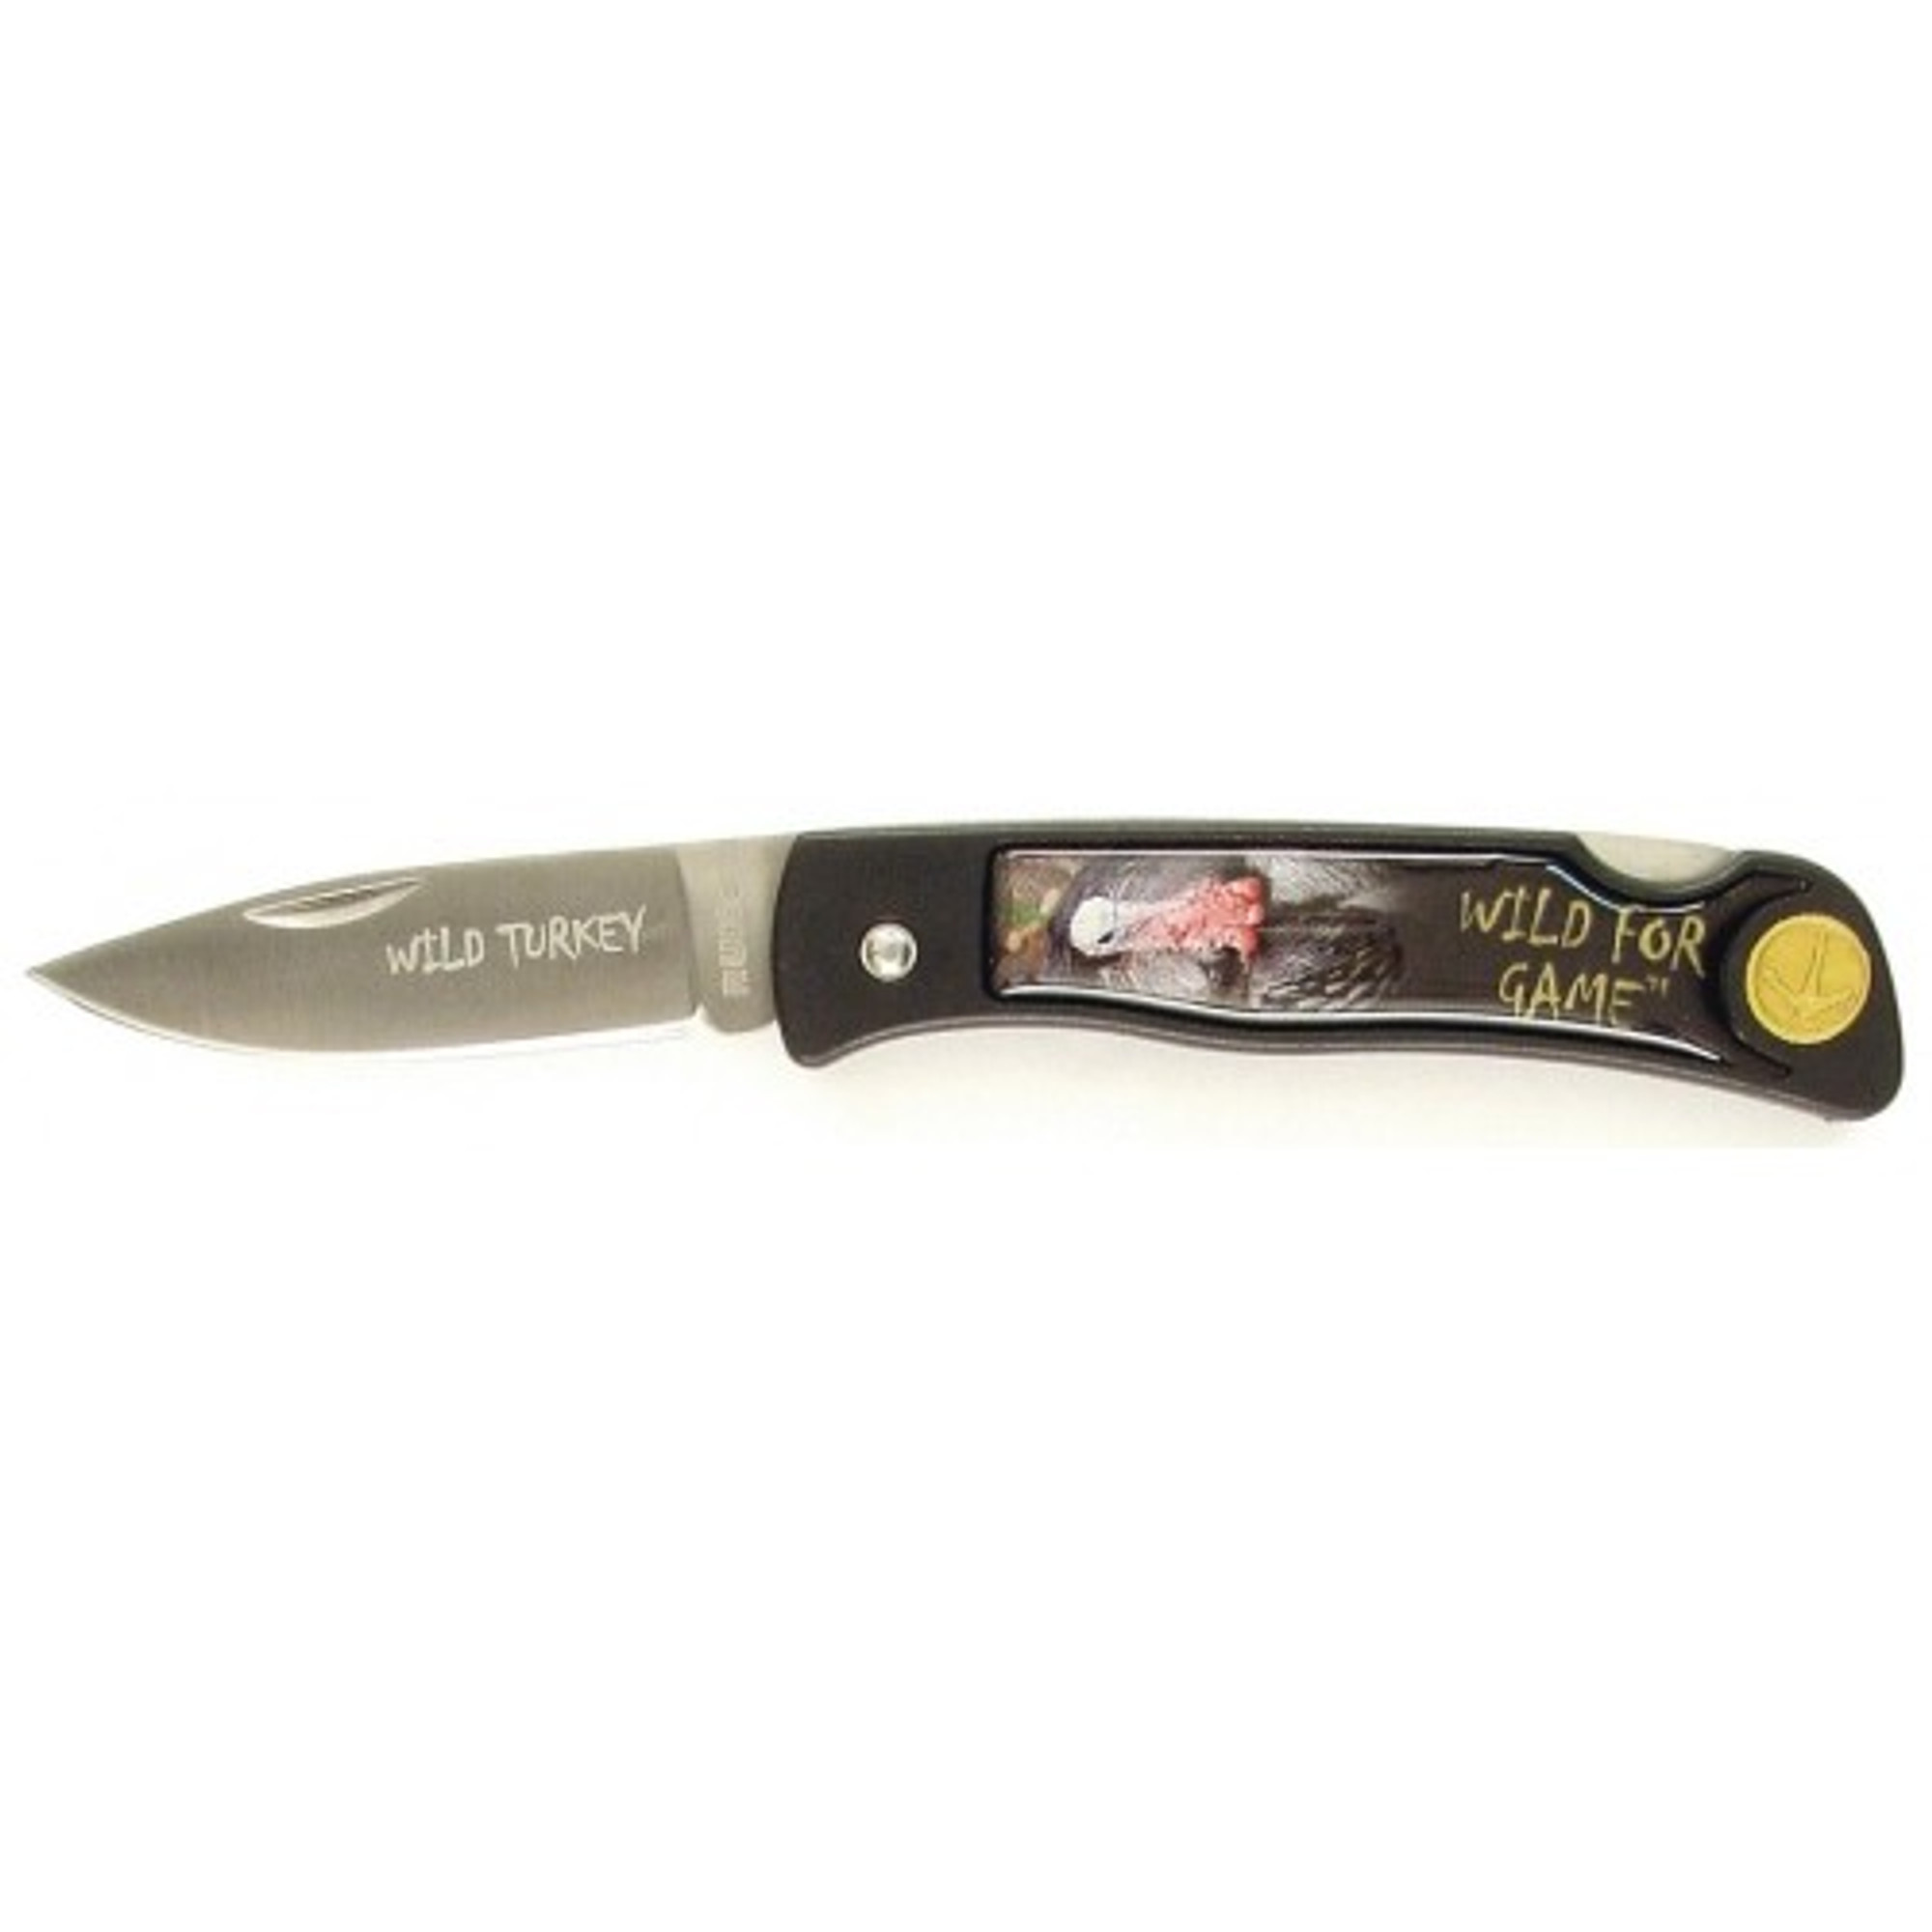 RUKO RUK0130WT, 420A, 2-1/2" Folding Blade Knife, Wild Turkey Image on Nylon Handle, boxed